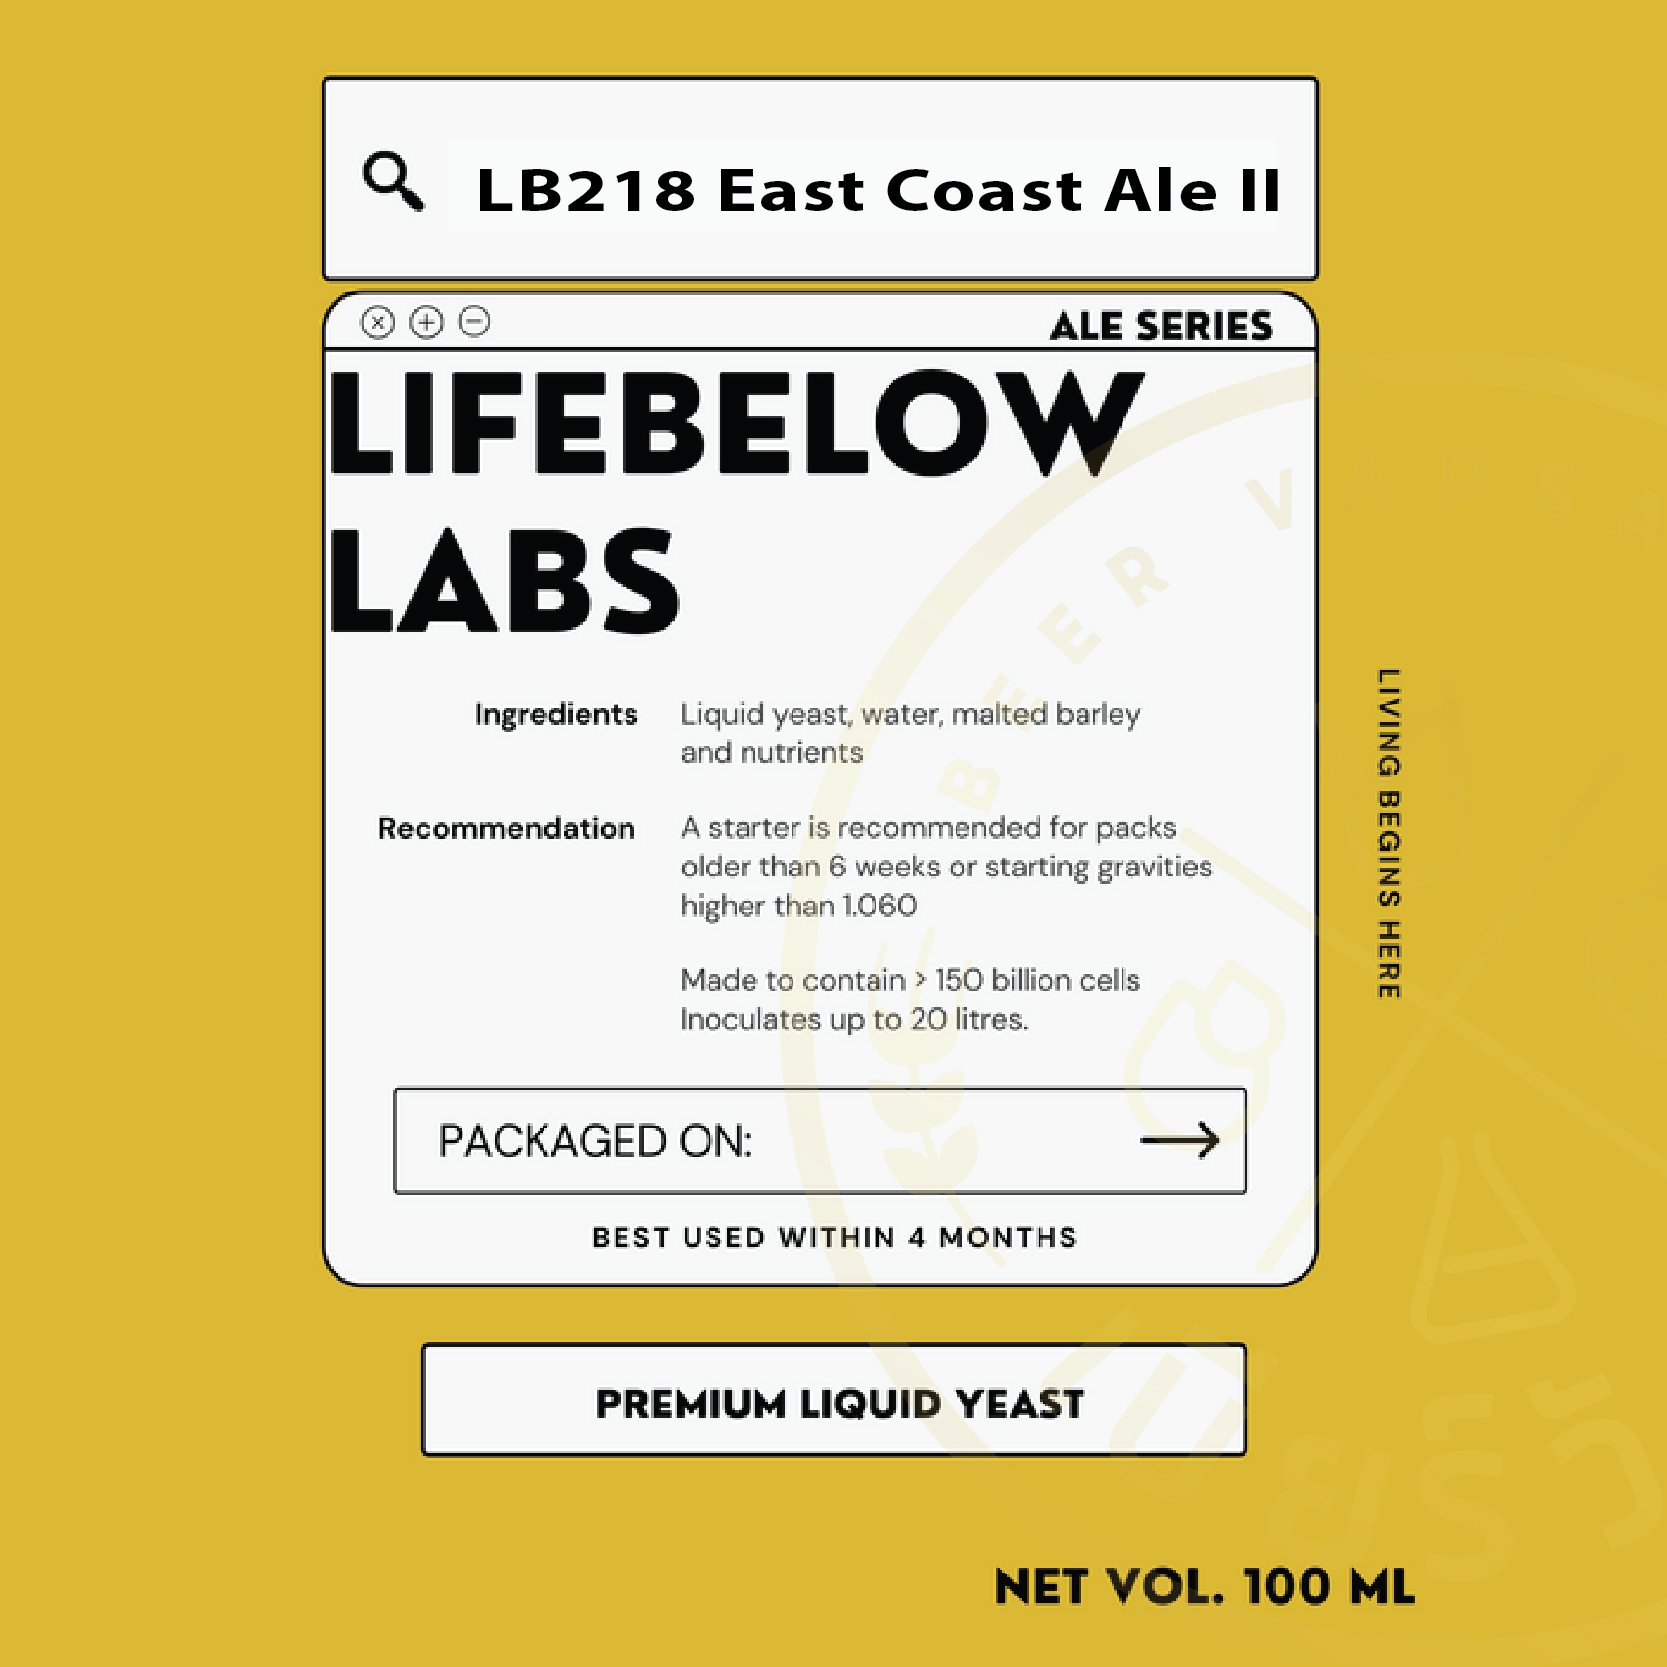 LB218 East Coast Ale II (Life Below)